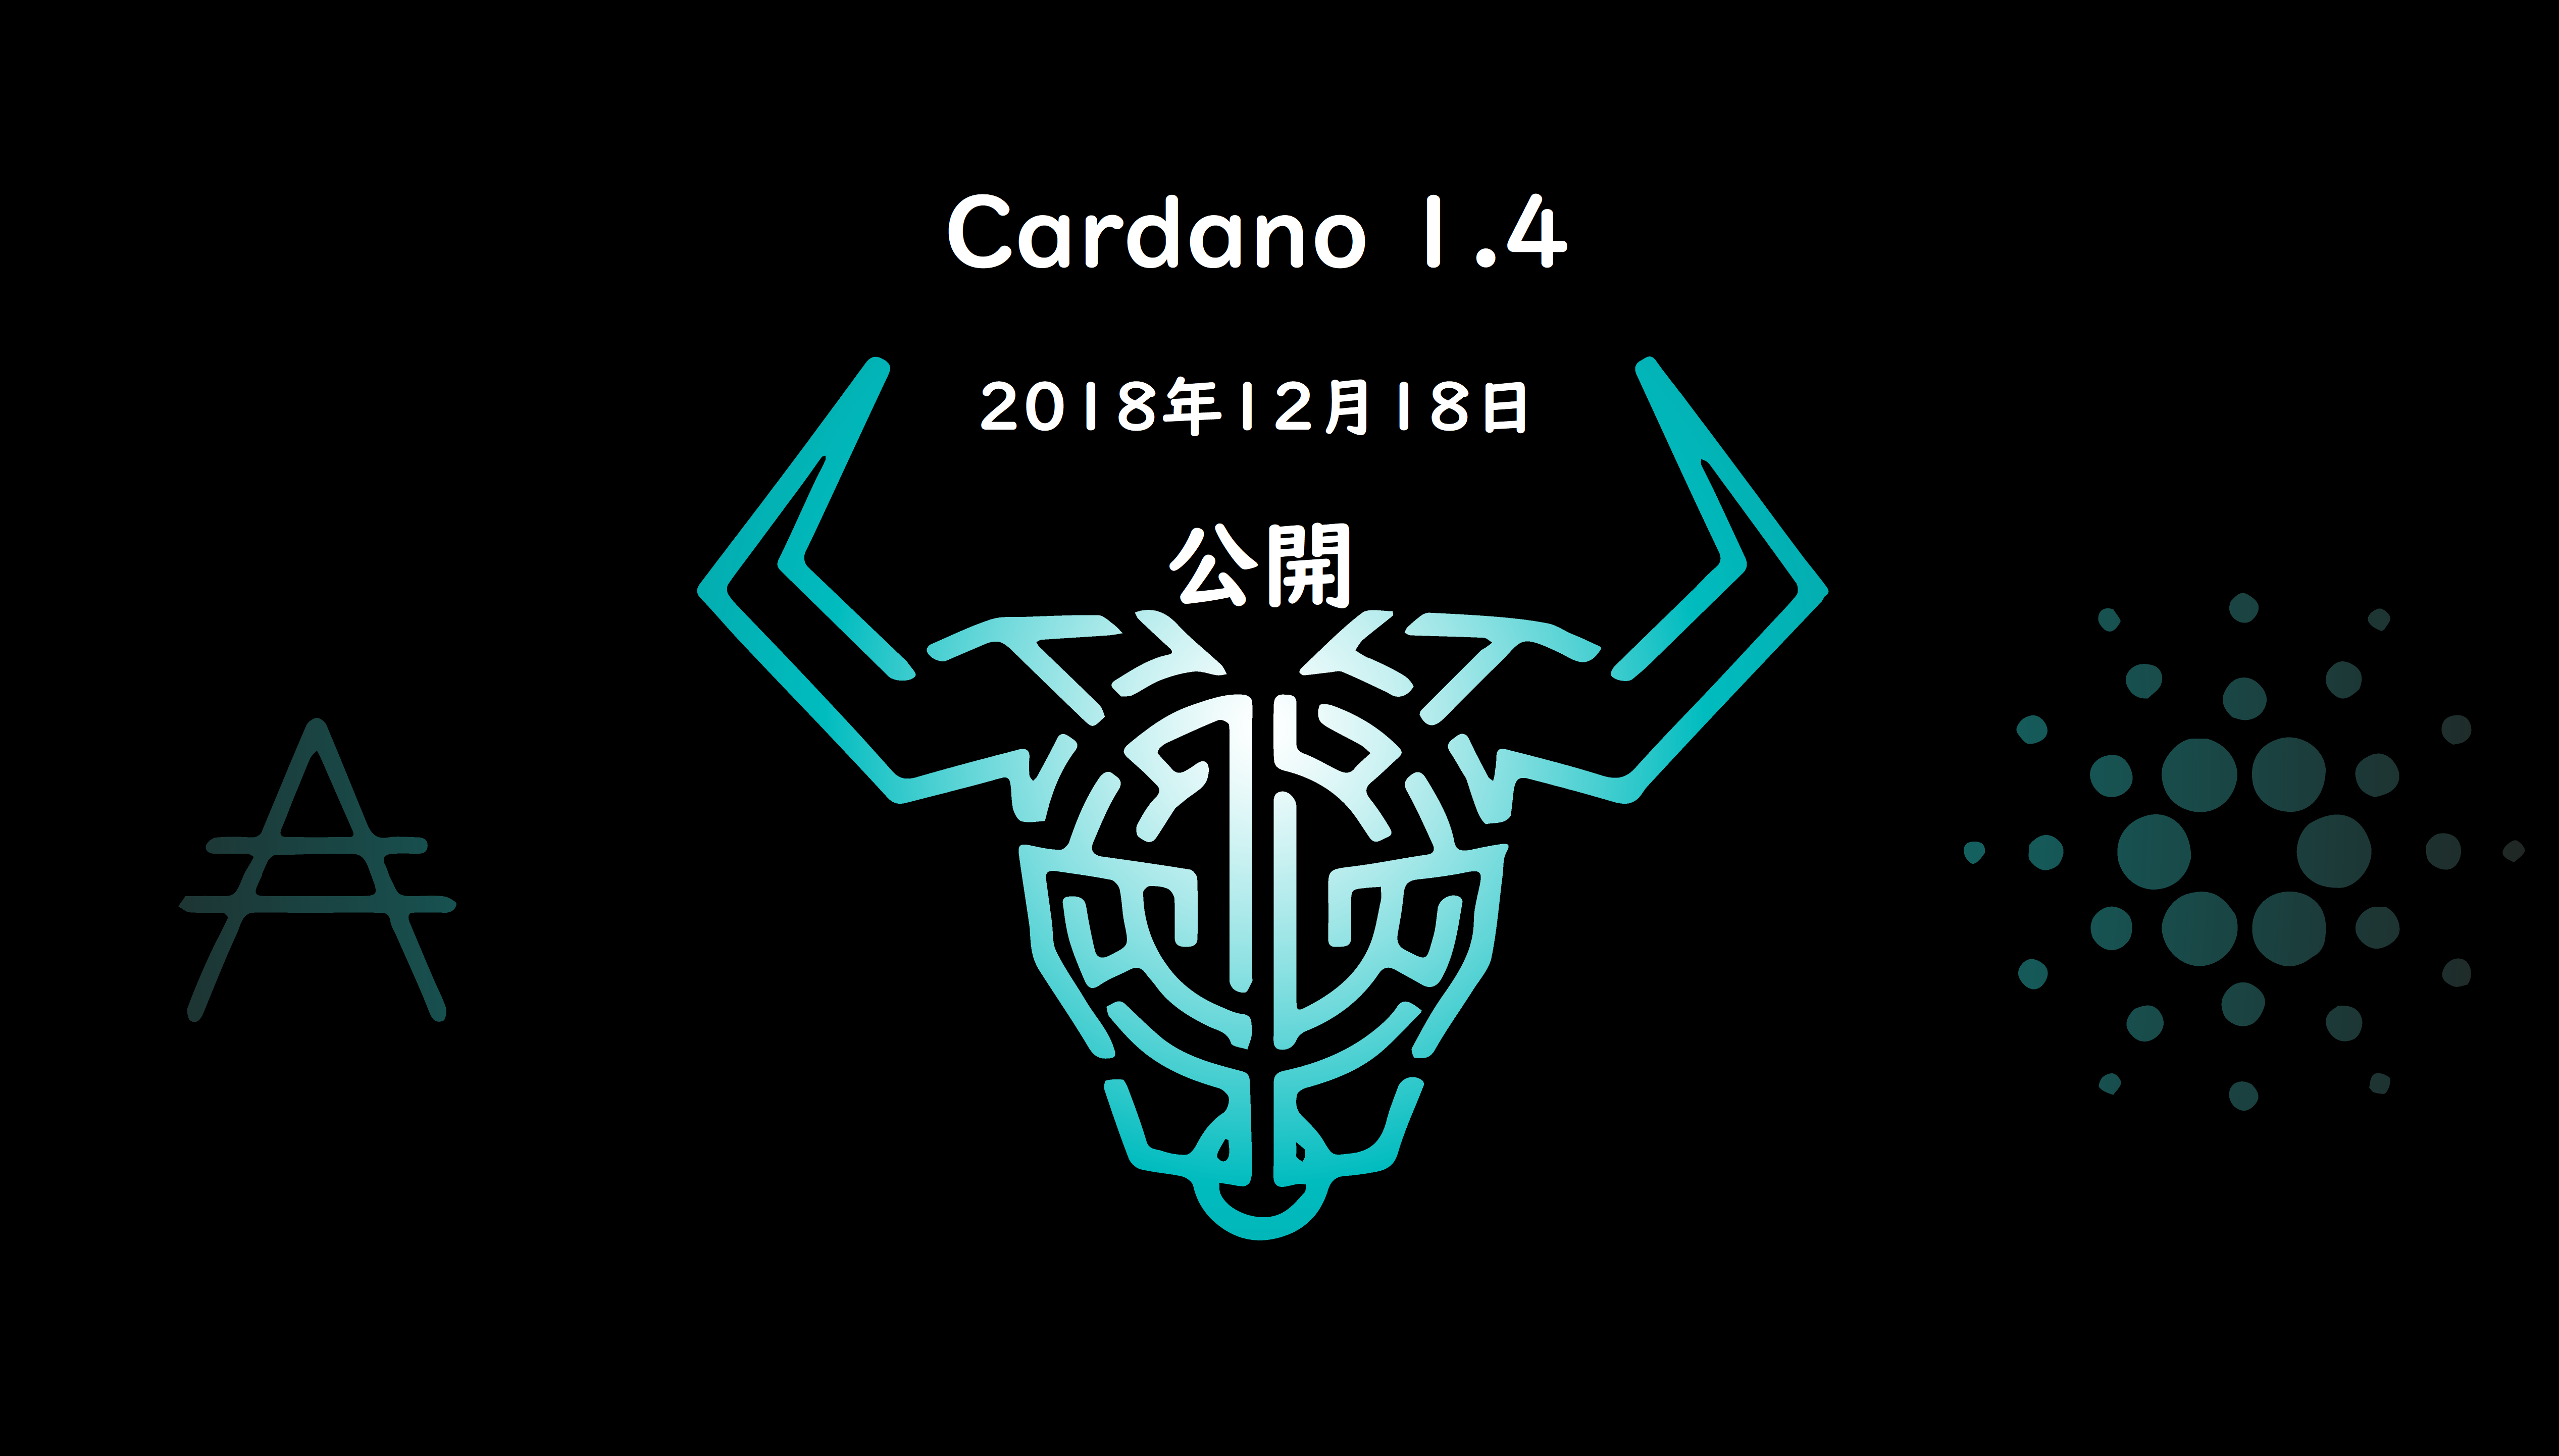 【12月18日】Cardano 1.4(カルダノ1.4)がリリース予定！